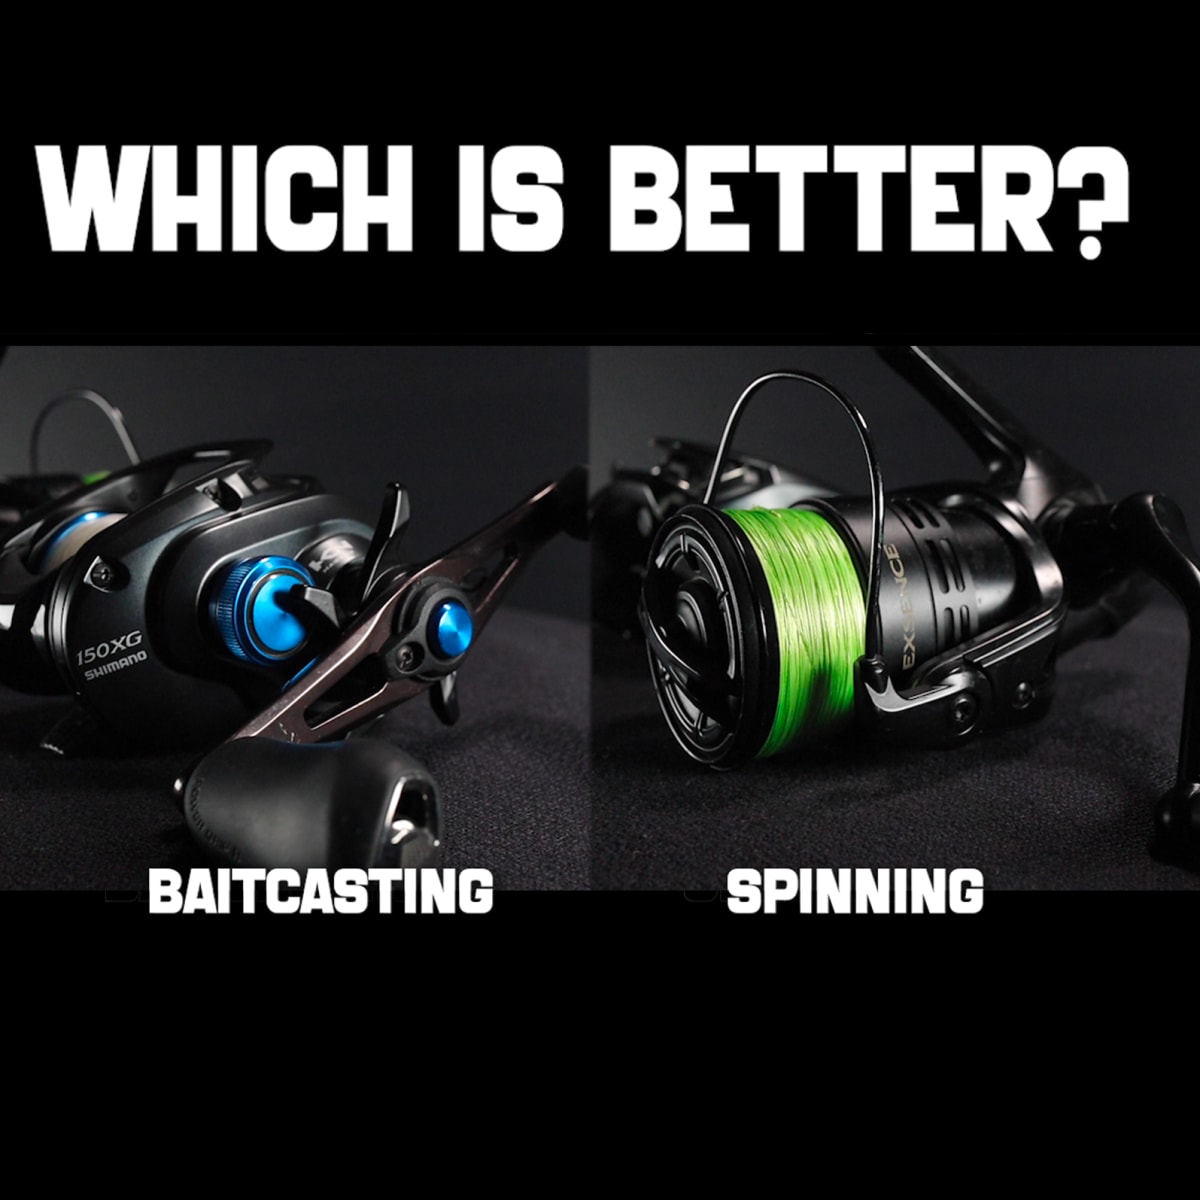 Baitcaster vs Spinning Reel